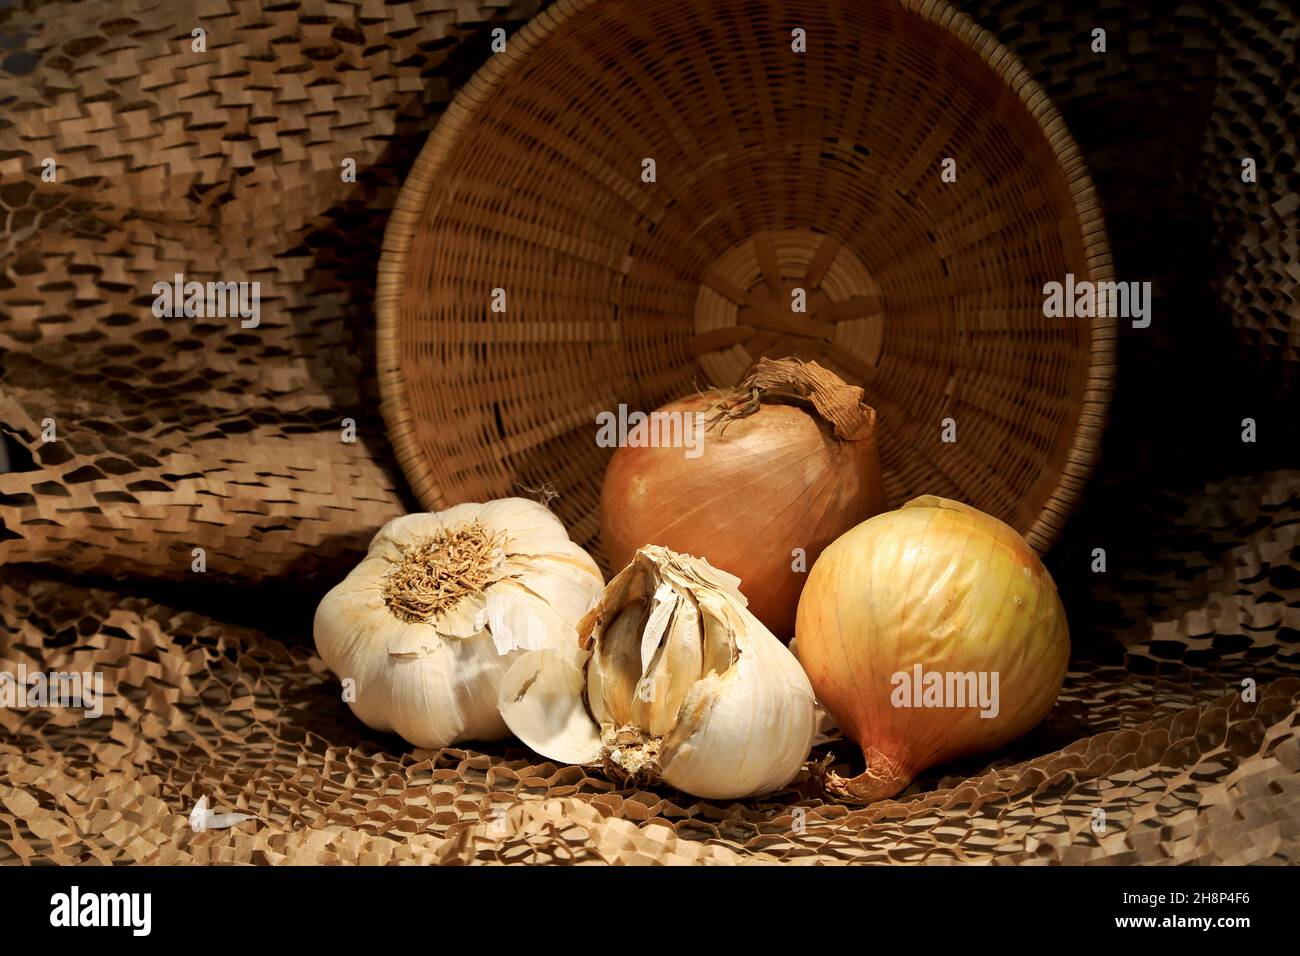 Cebolla y ajo con una cesta marrón en una mesa Foto de stock